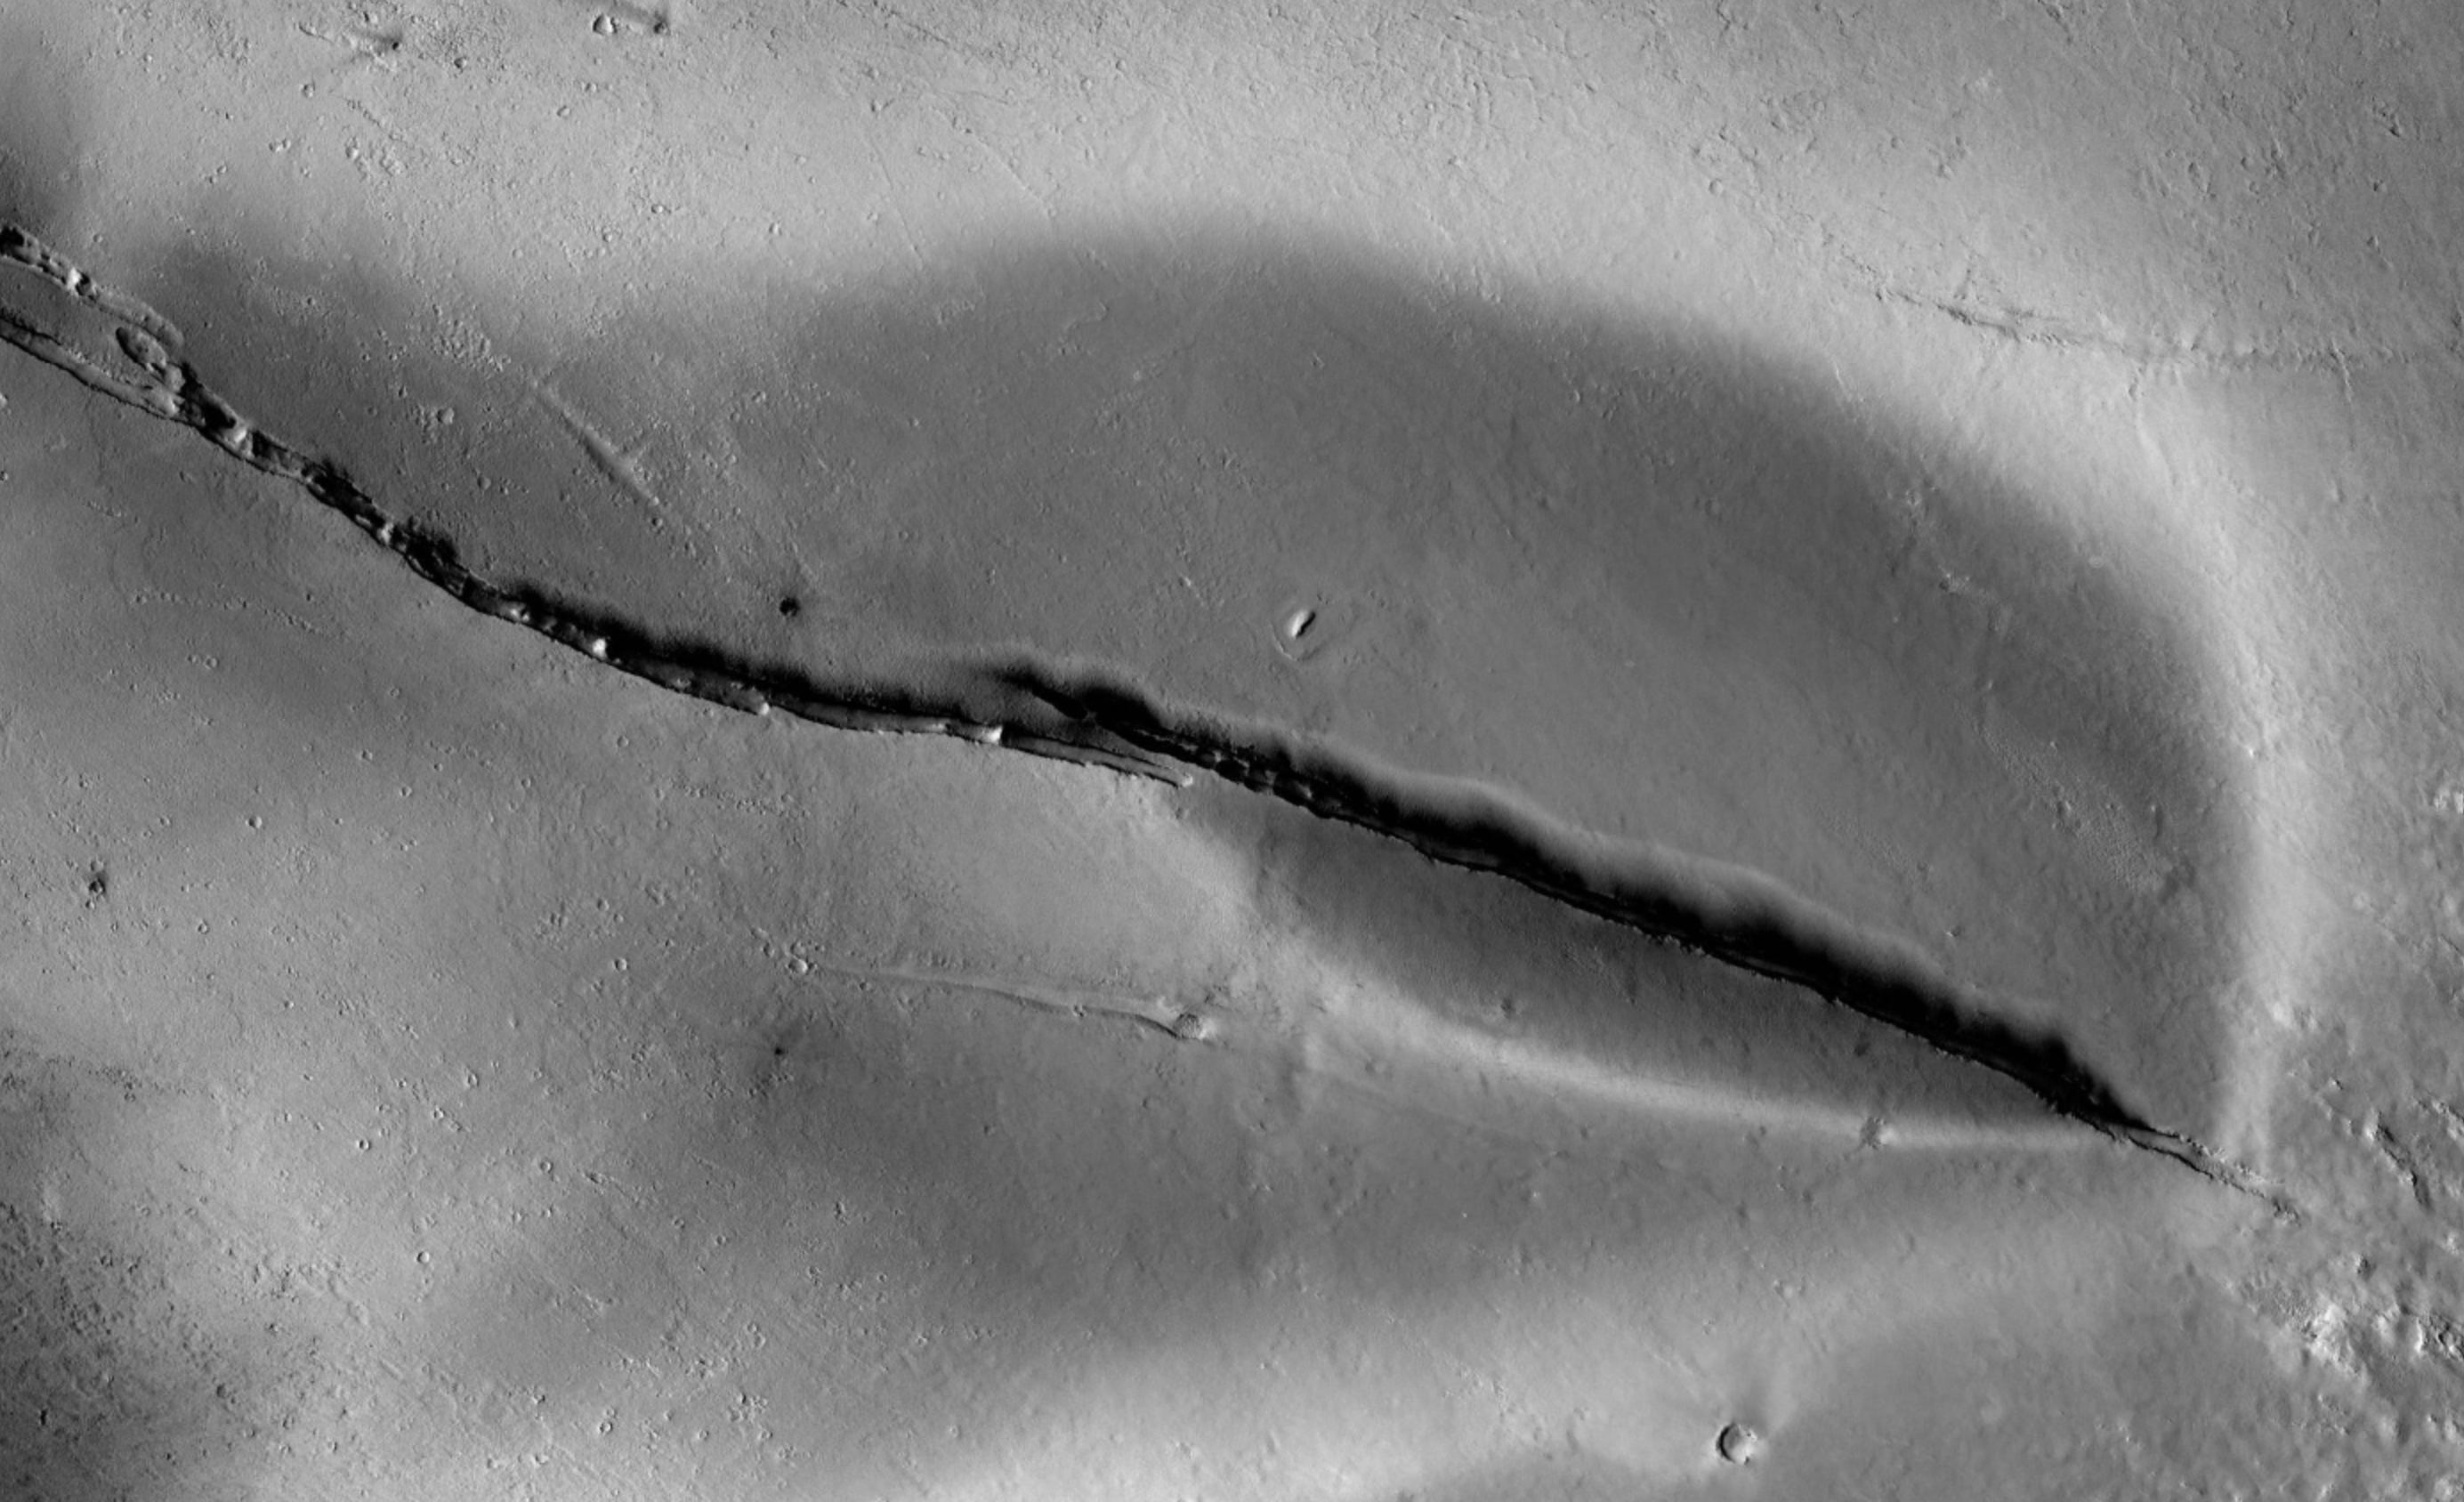 Vulkáni tevékenységre utaló nyomokat találtak a Marson